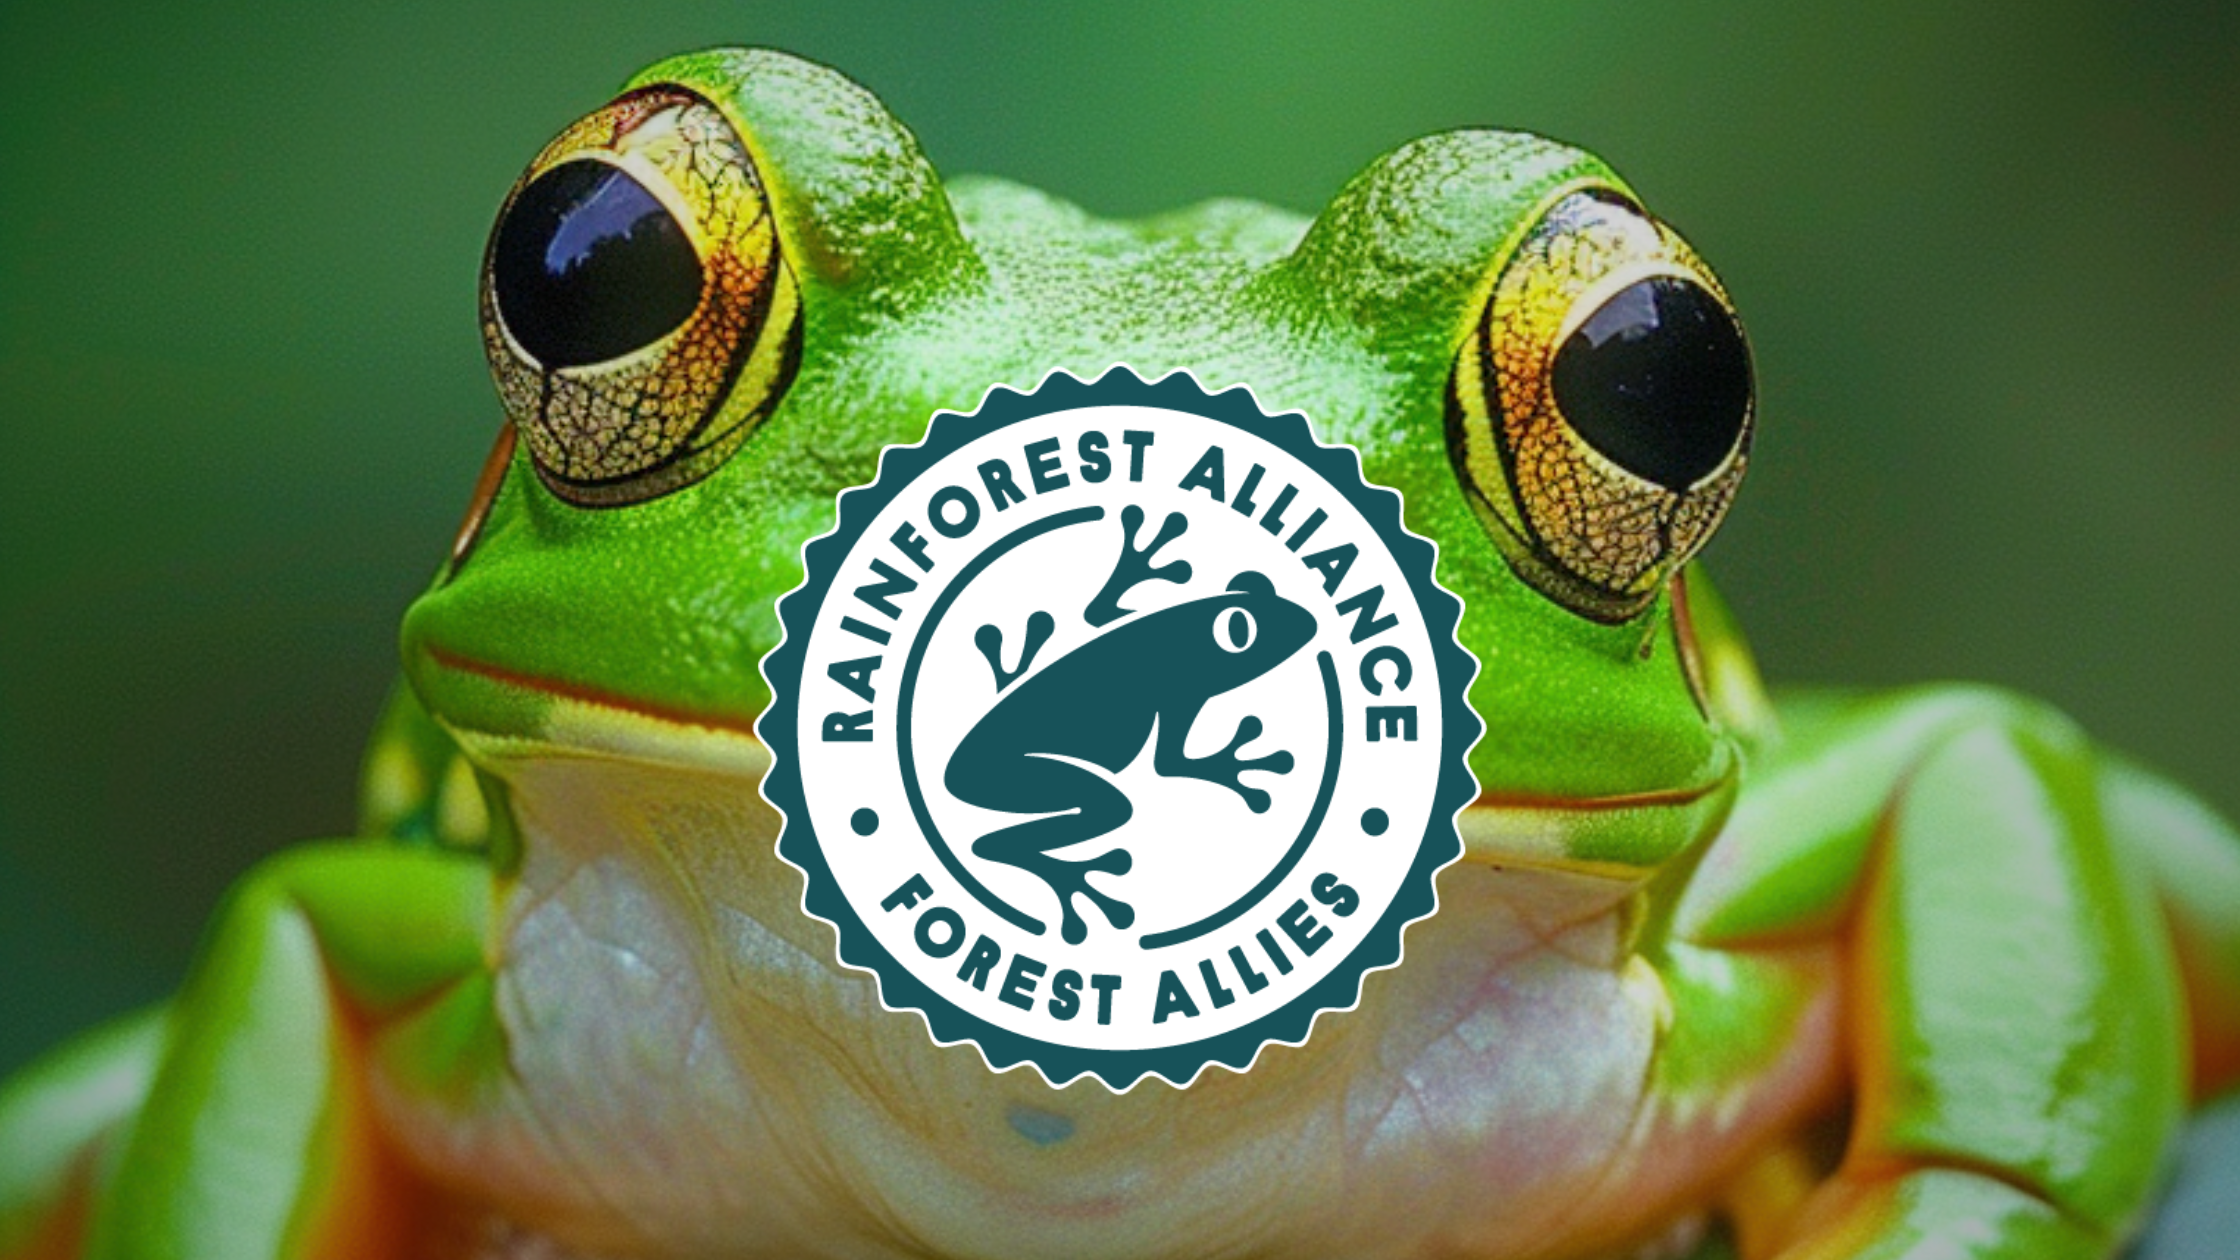 Co je pravda? Zelená žába na potravinách (Rainforest Alliance)